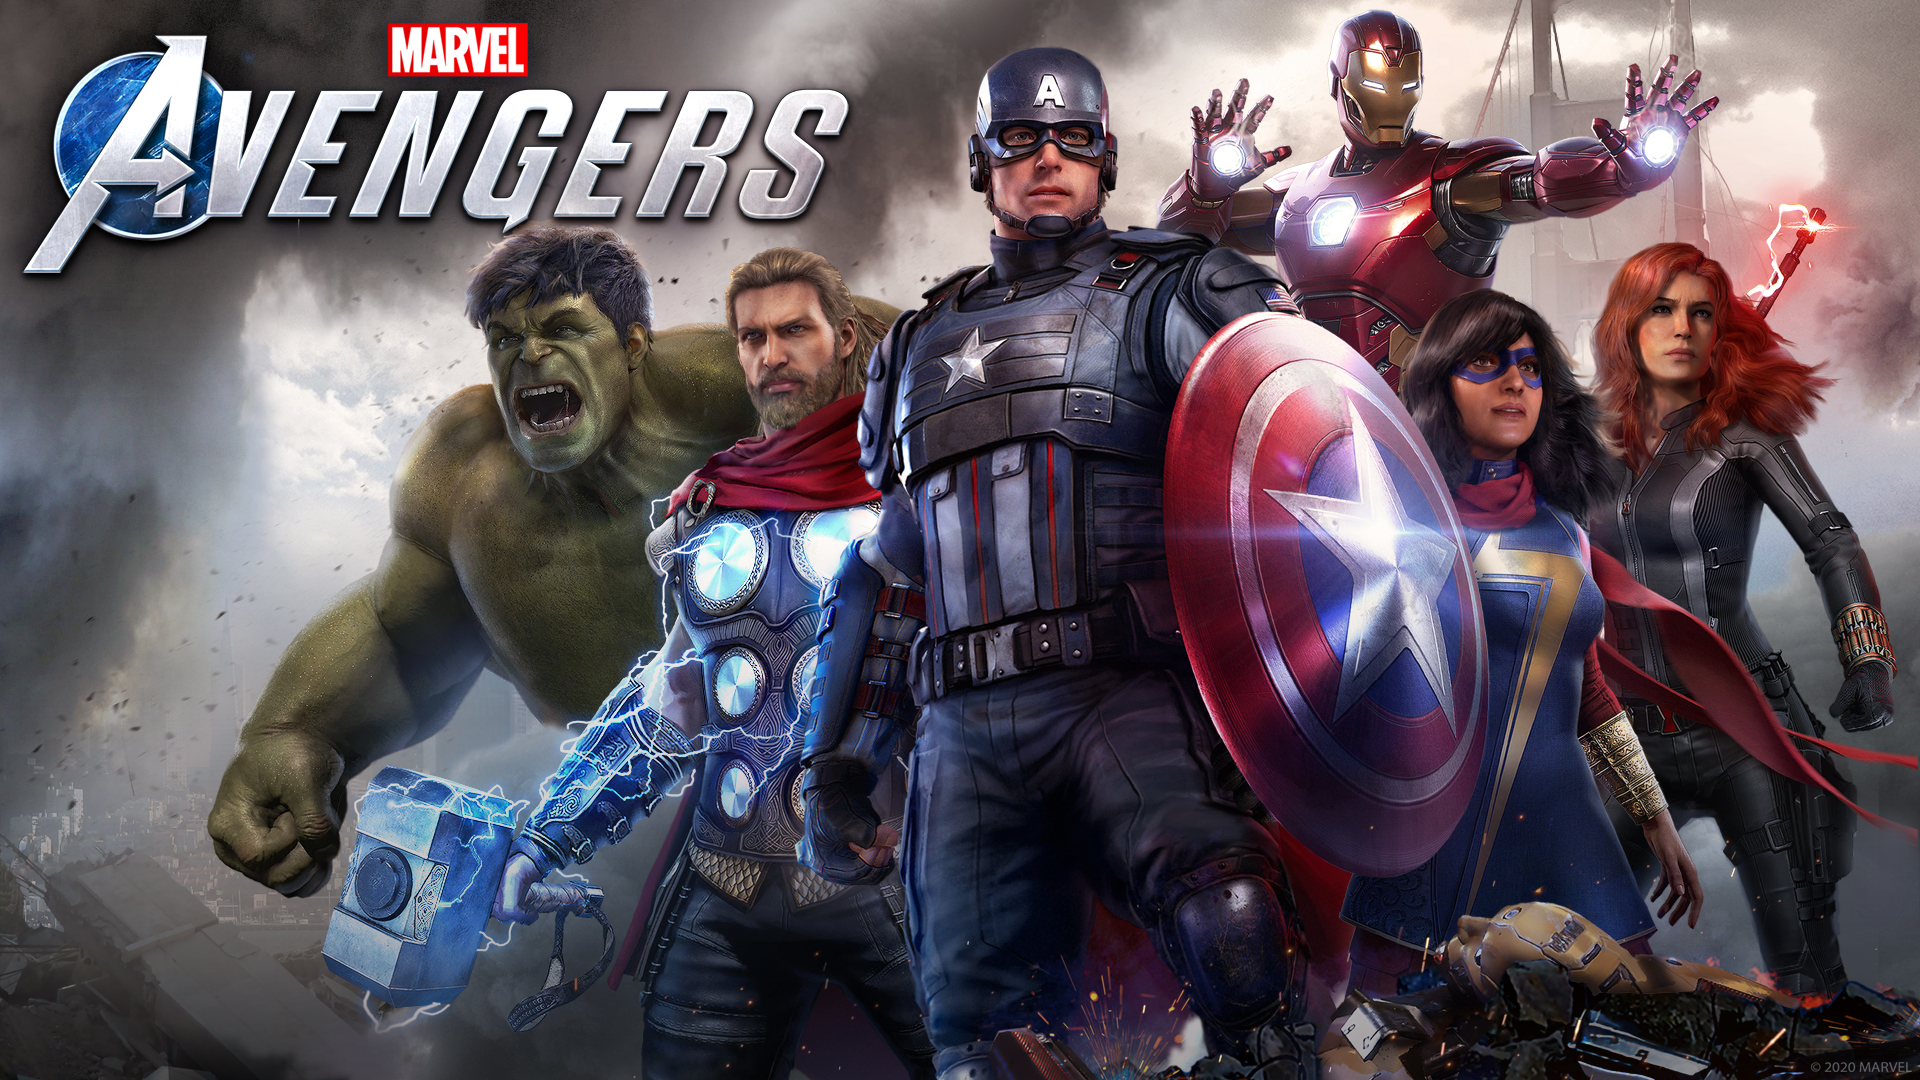 Papeis de parede dos Avengers para você personalizar seu PS4